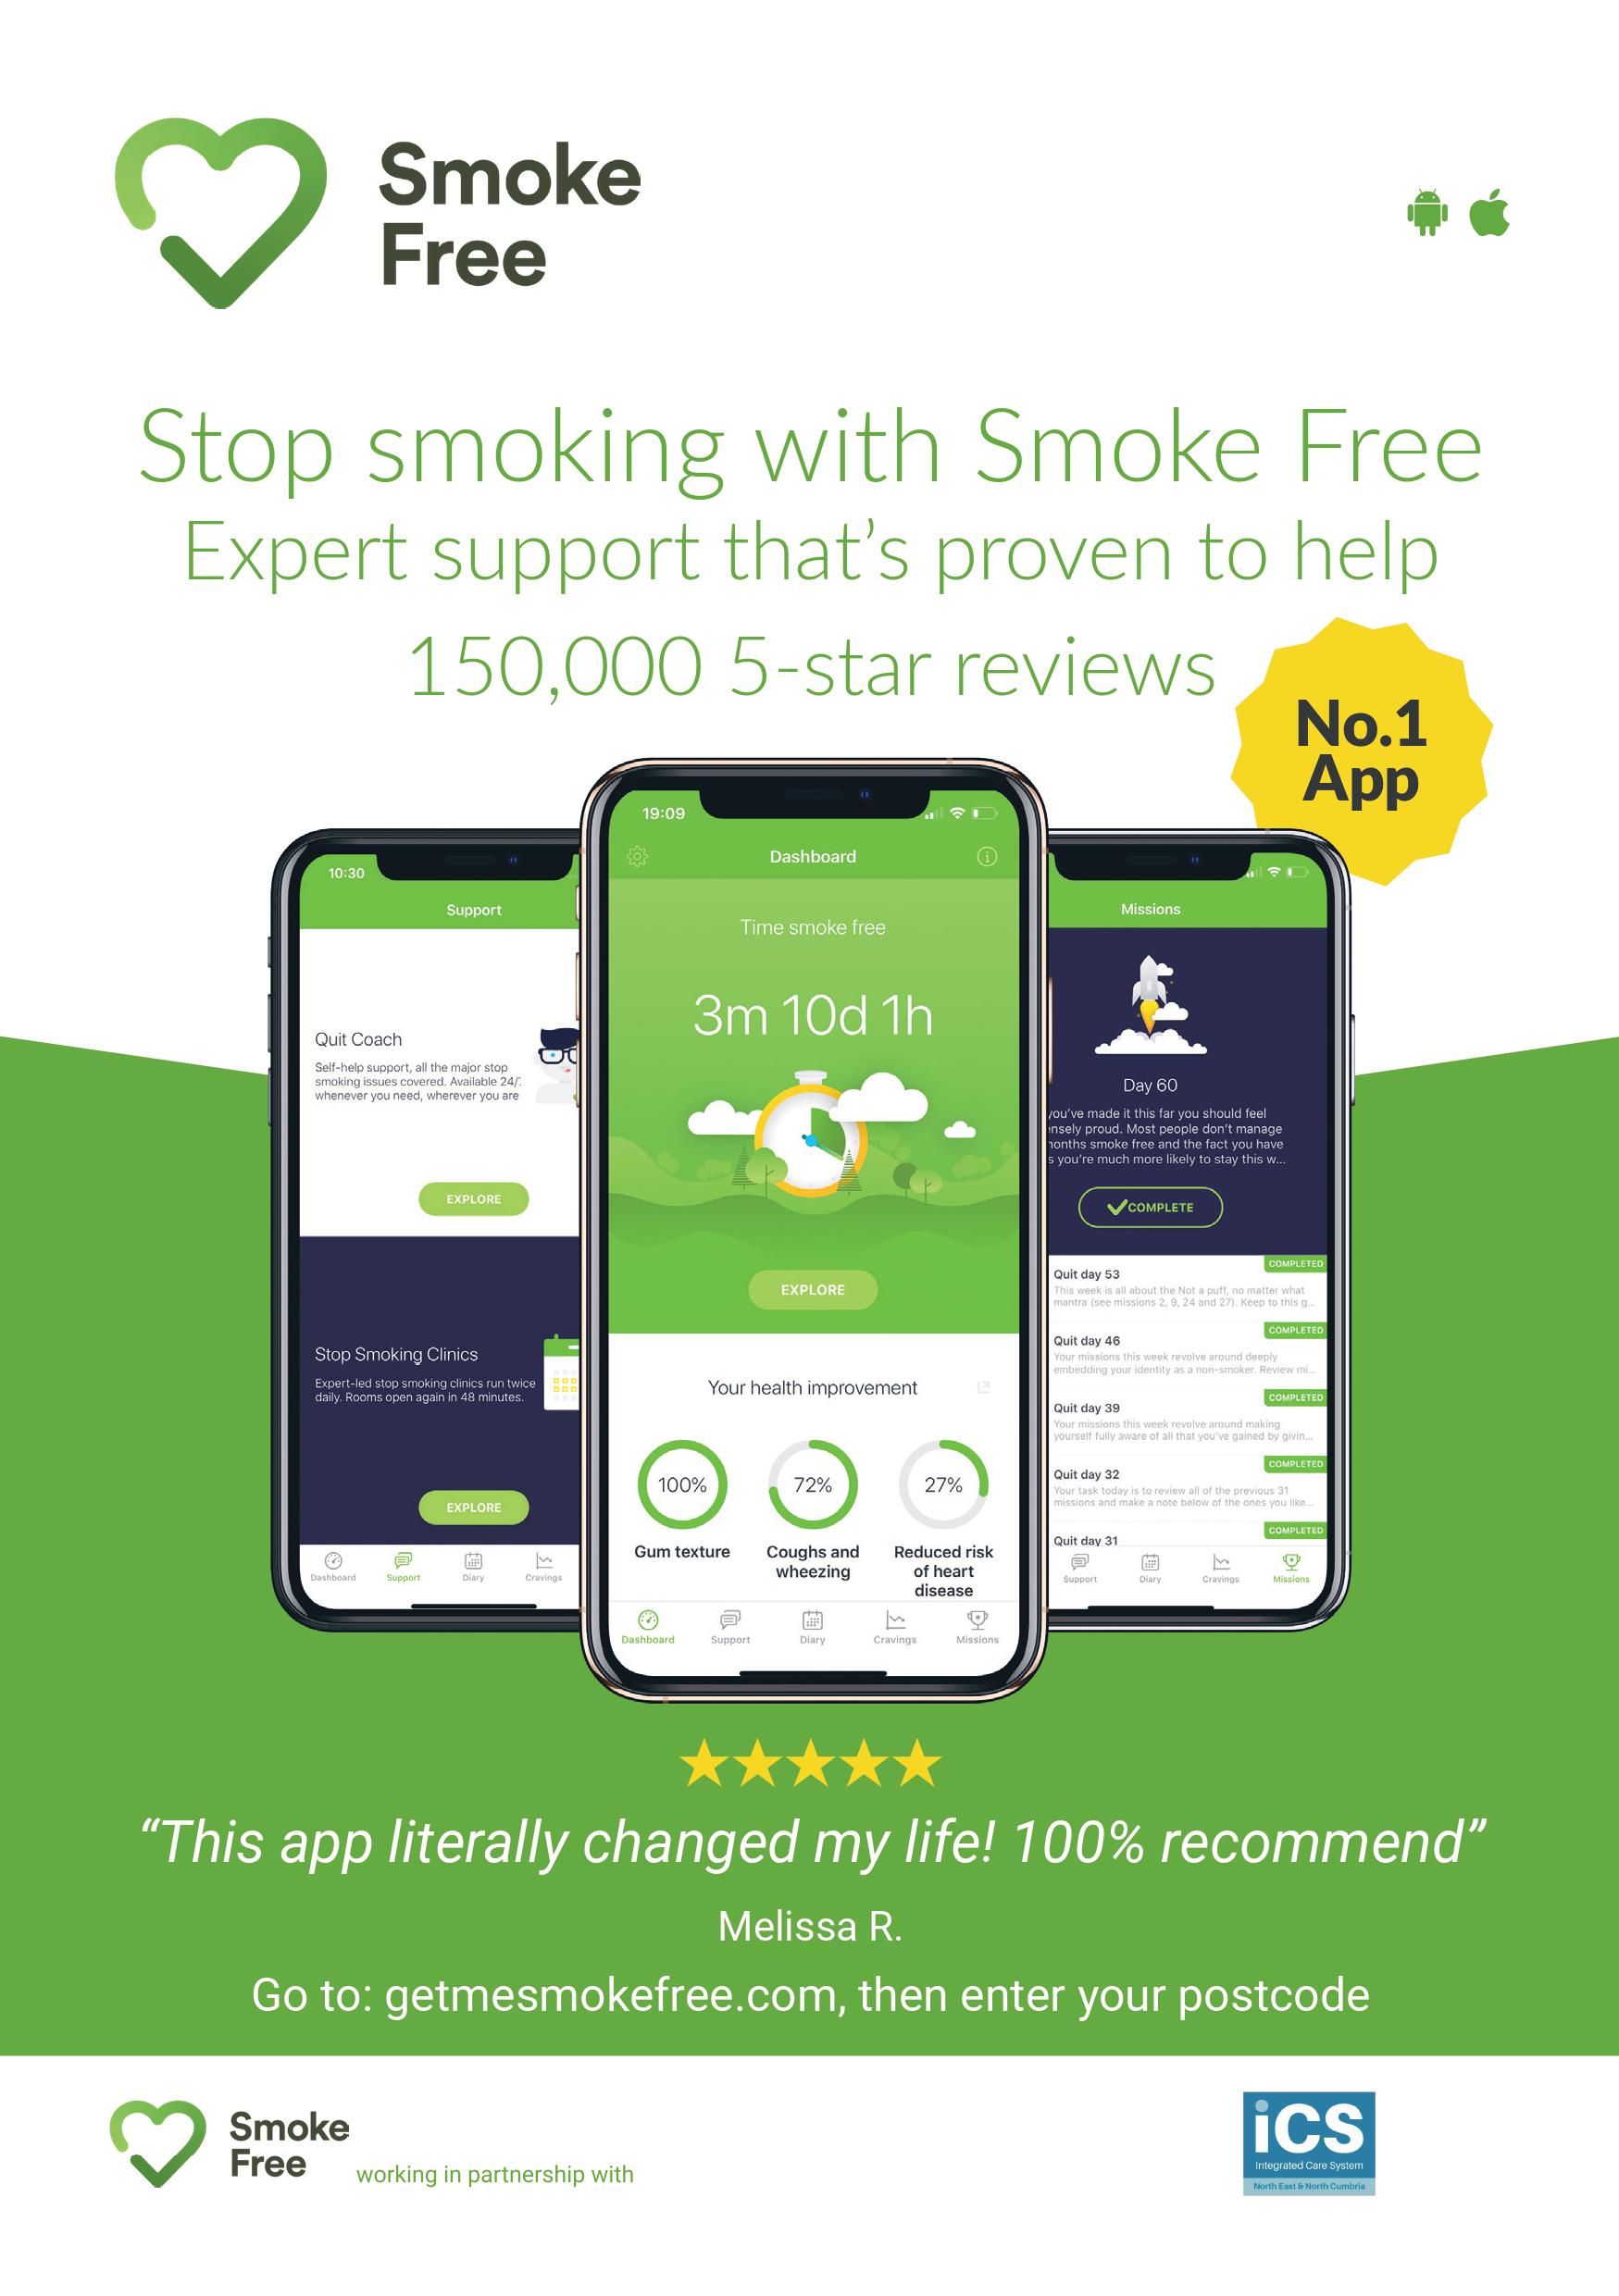 Smoke free app information